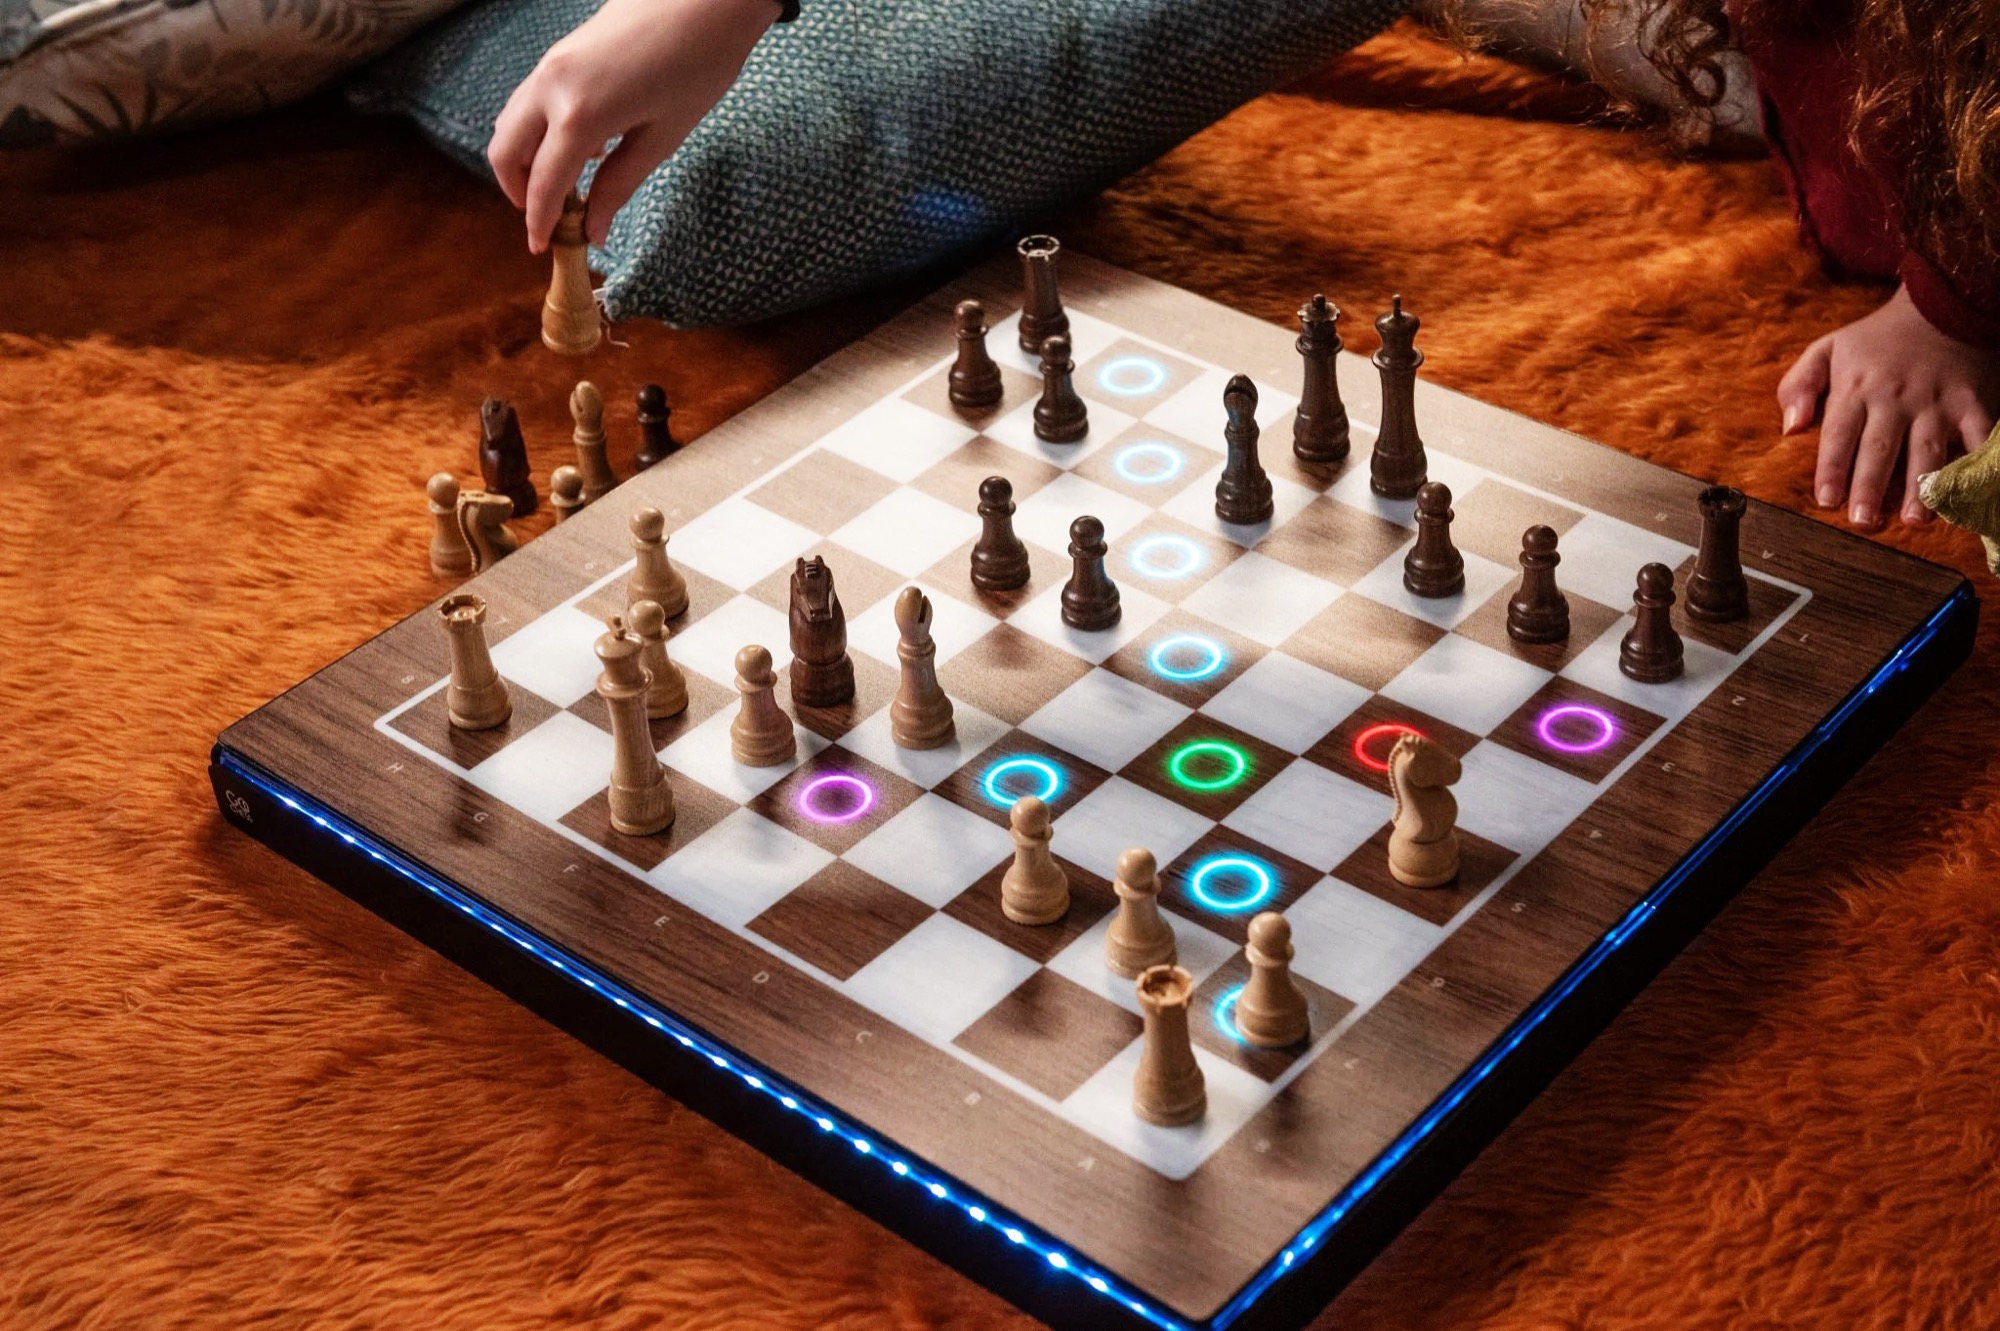 GoChess Roboter-Schachbrett sammelt über 1,2 Millionen Euro auf Kickstarter 